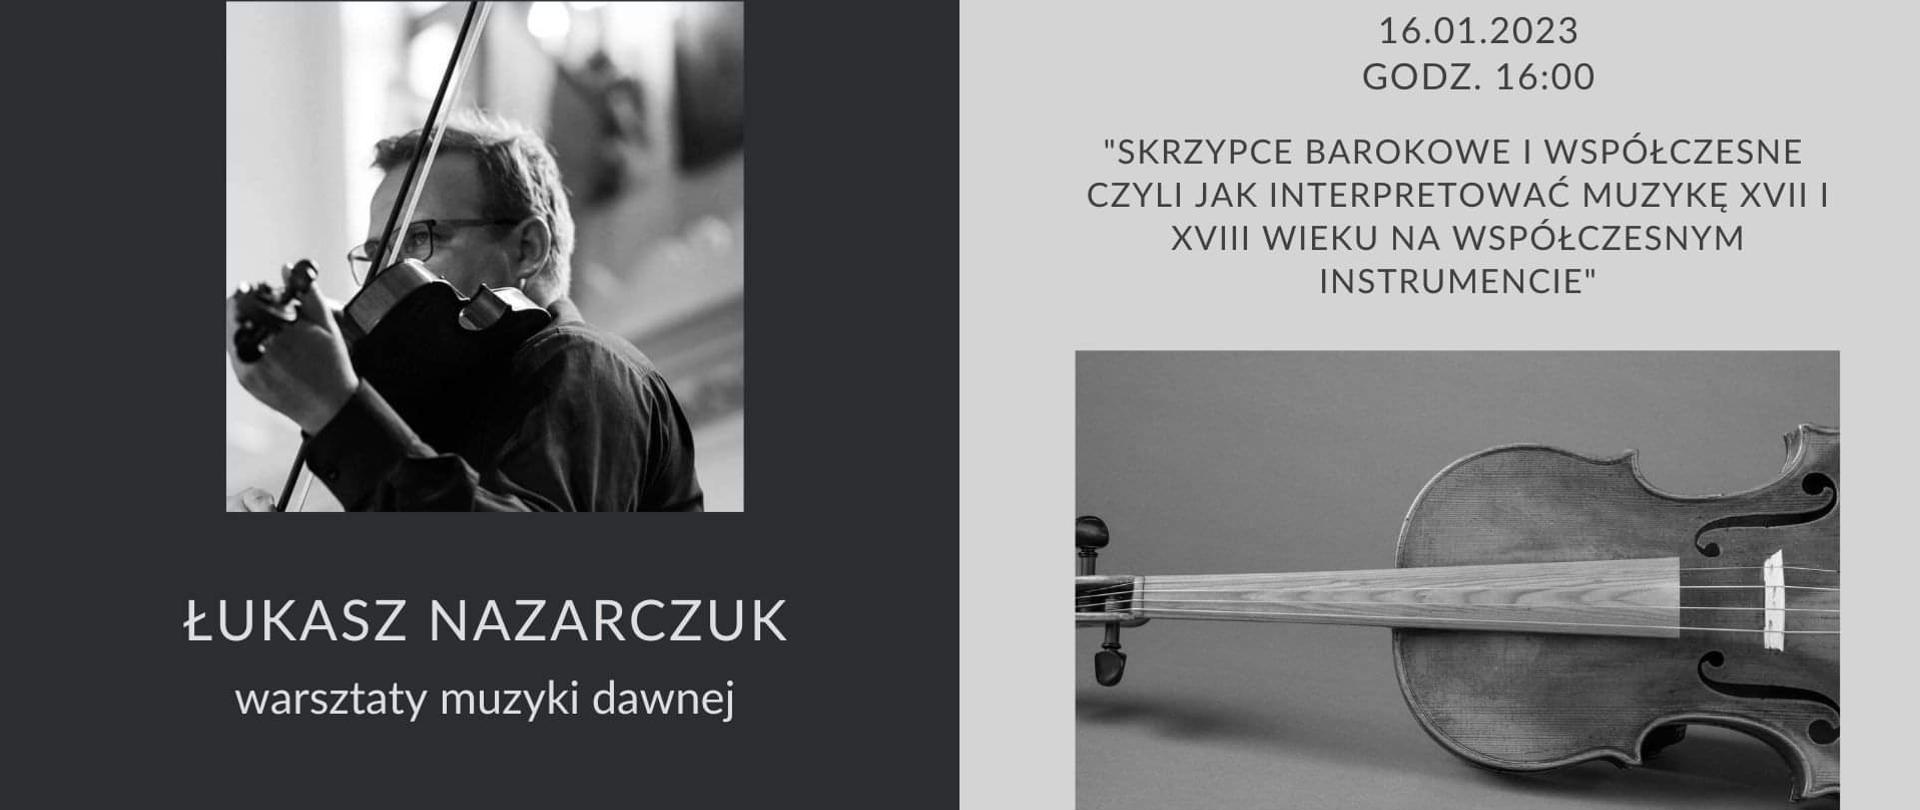 Plakat dwuczęściowy, po lewej stronie czarno-białe zdjęcie Łukasza Nazarczuka na ciemnym tle, po prawej stronie informacje o warsztatach a u dołu czarno-białe zdjęcie skrzypiec na szarym tle.